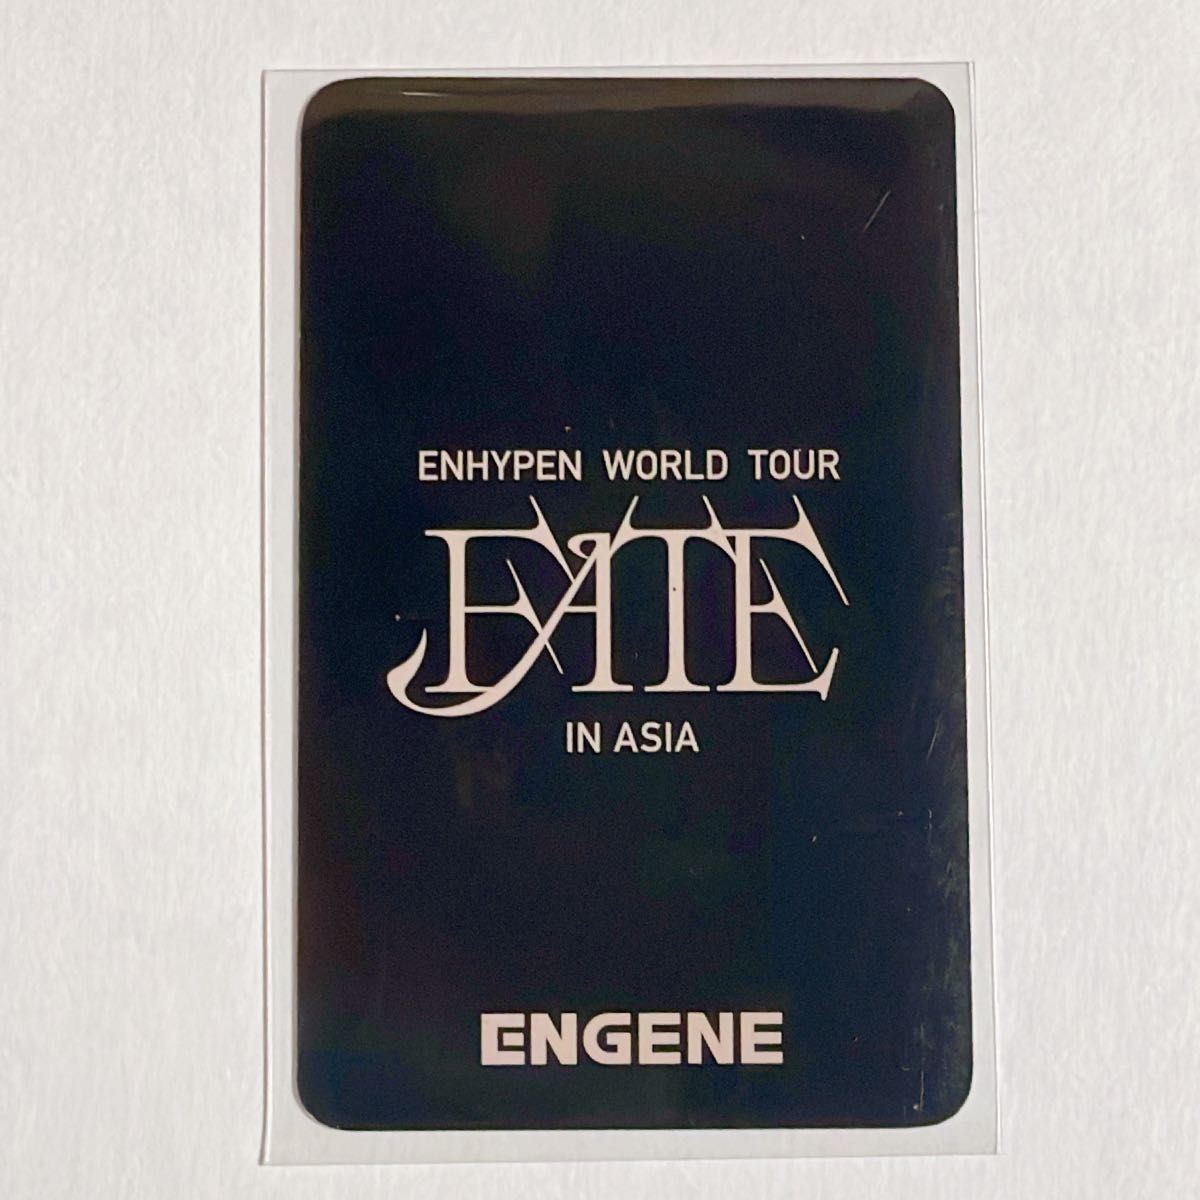 ENHYPEN WORLD TOUR FATE IN ASIA マカオ ニキ FCトレカ